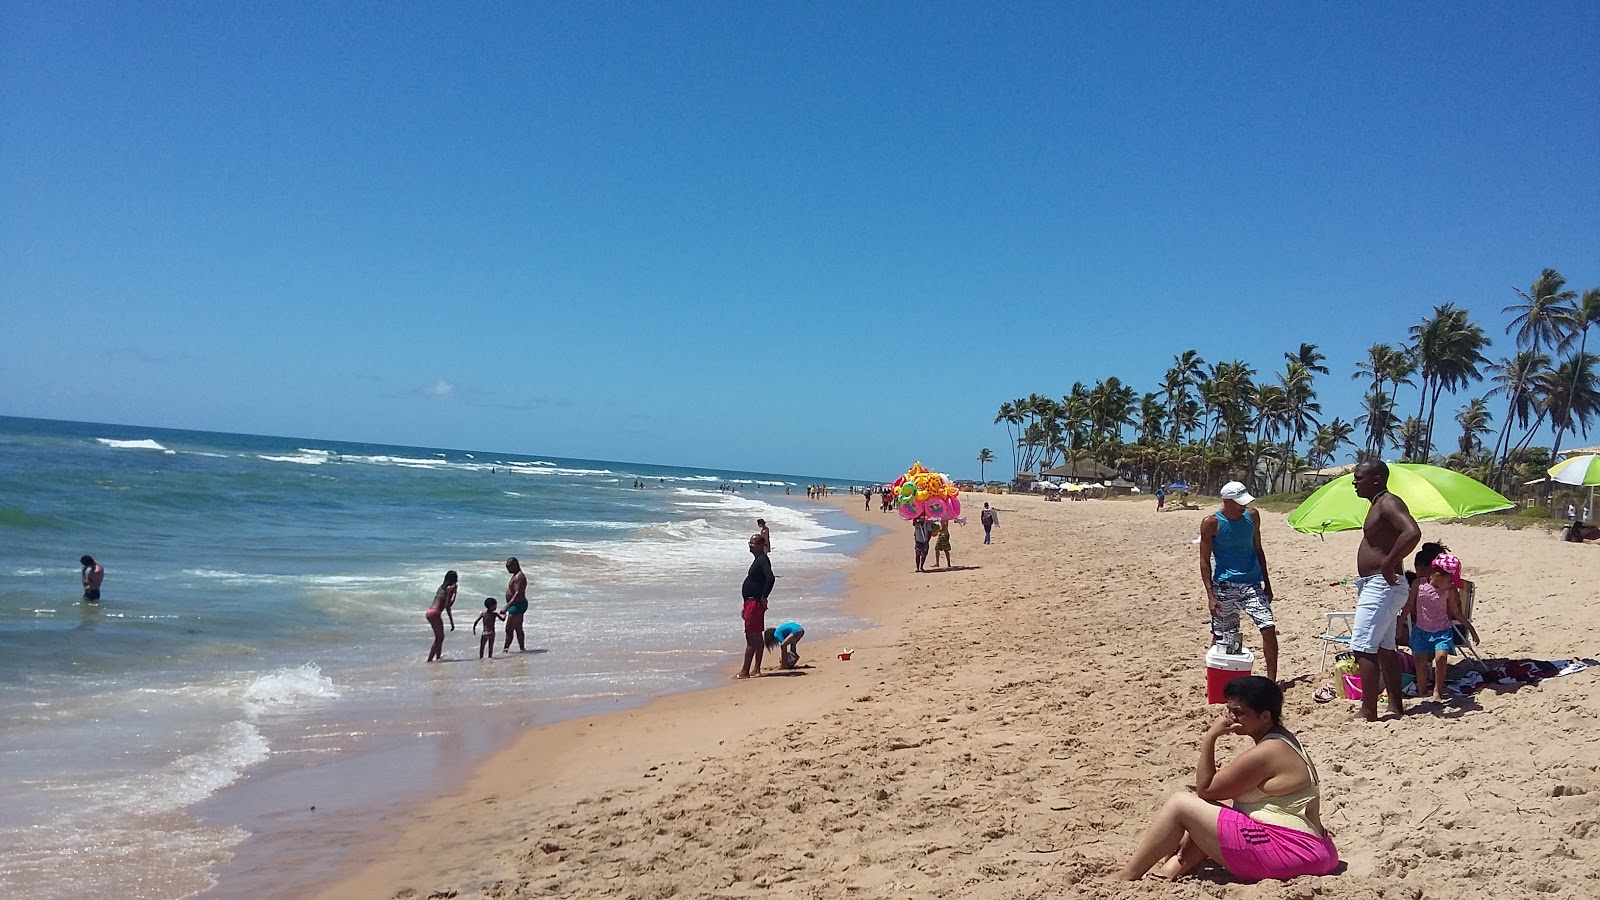 Praia de Buraquinho的照片 带有碧绿色纯水表面